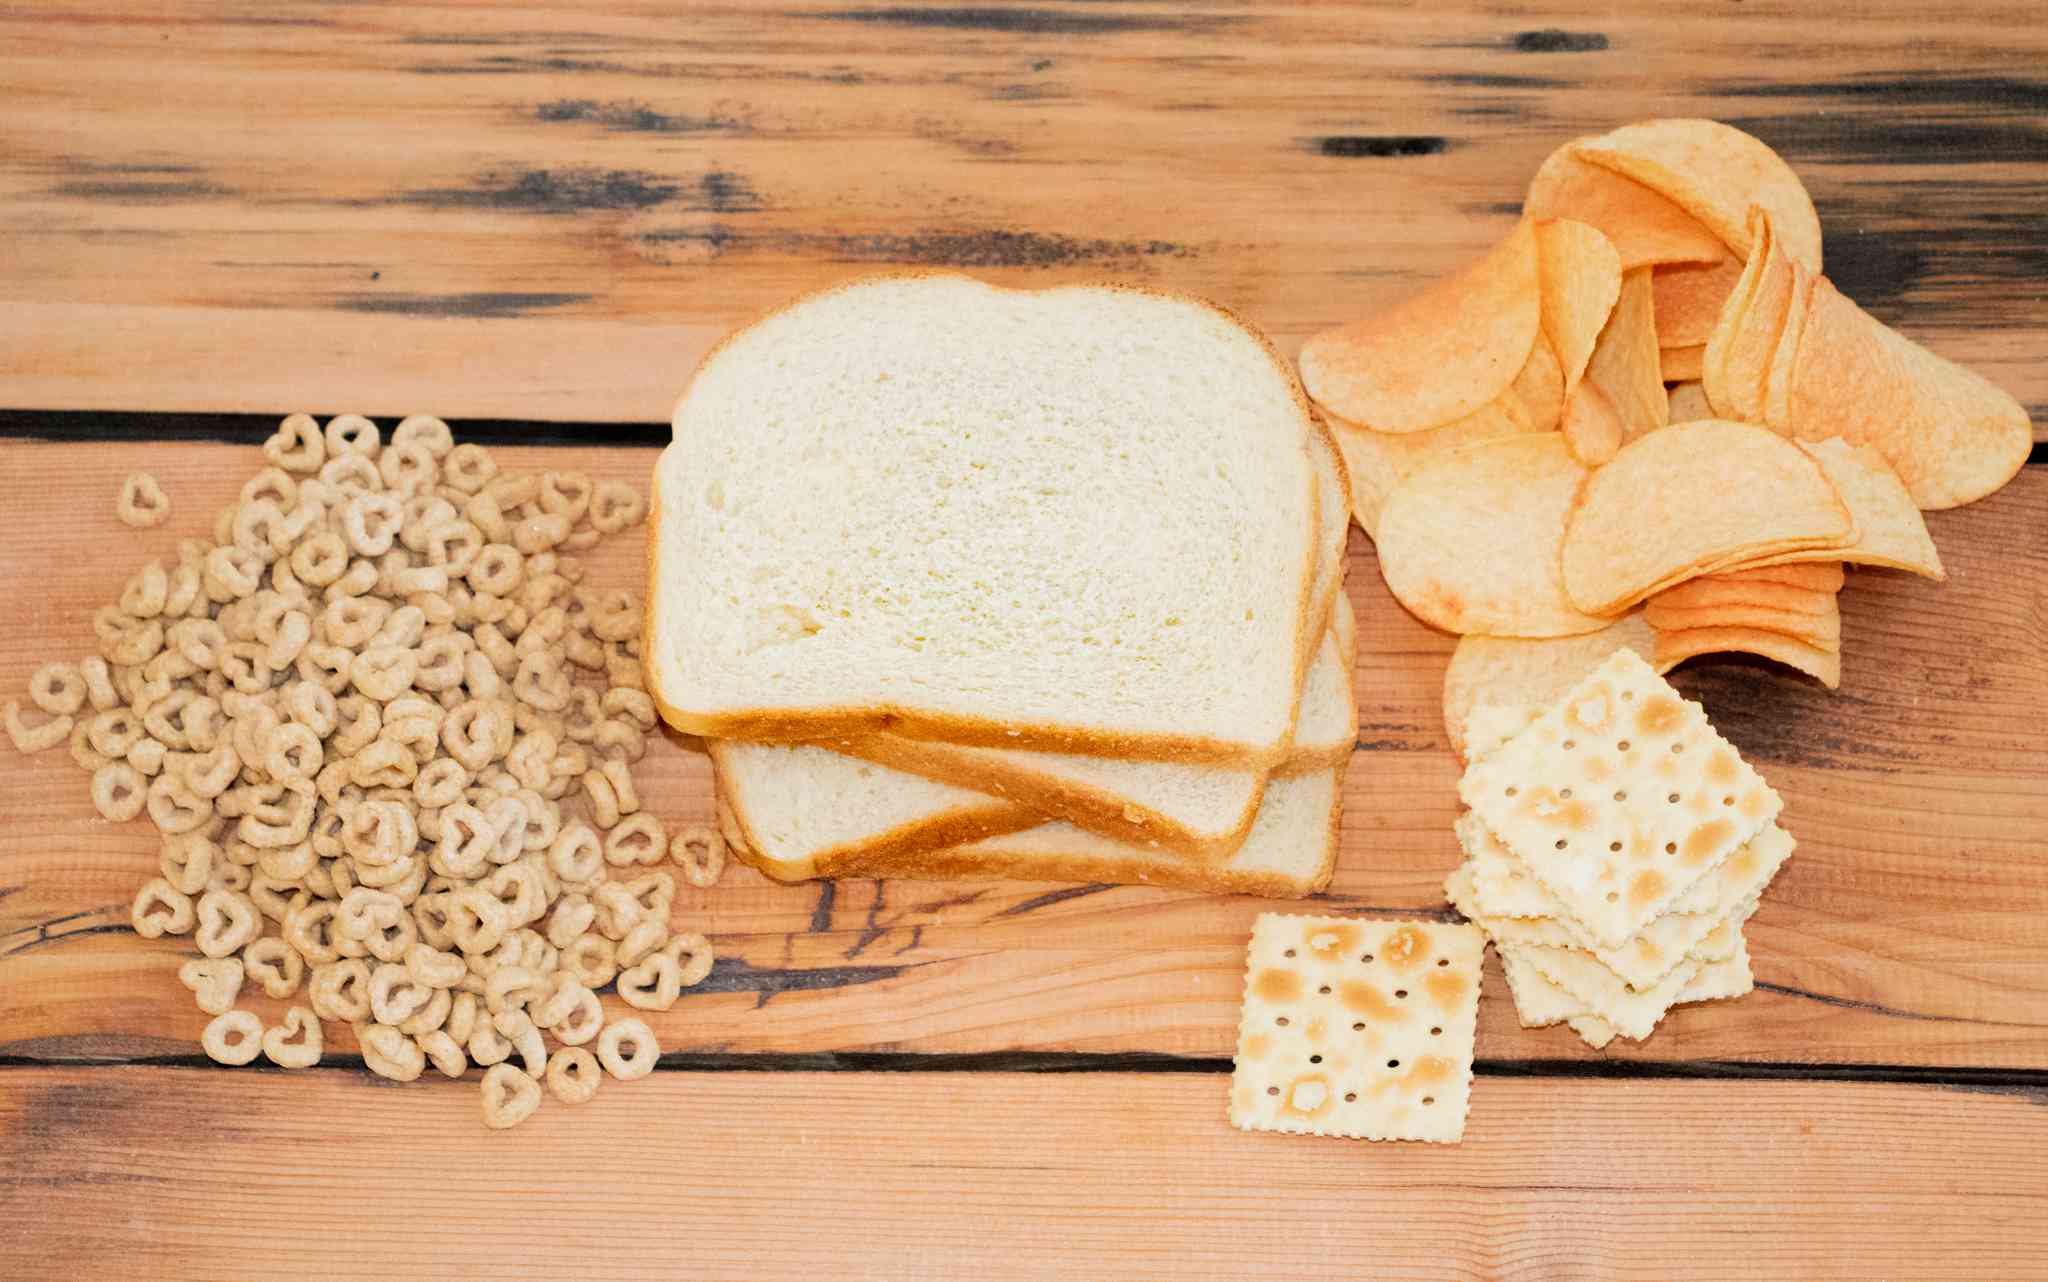 谷物，白面包和薯片都是不健康的食物，不适合鸭子